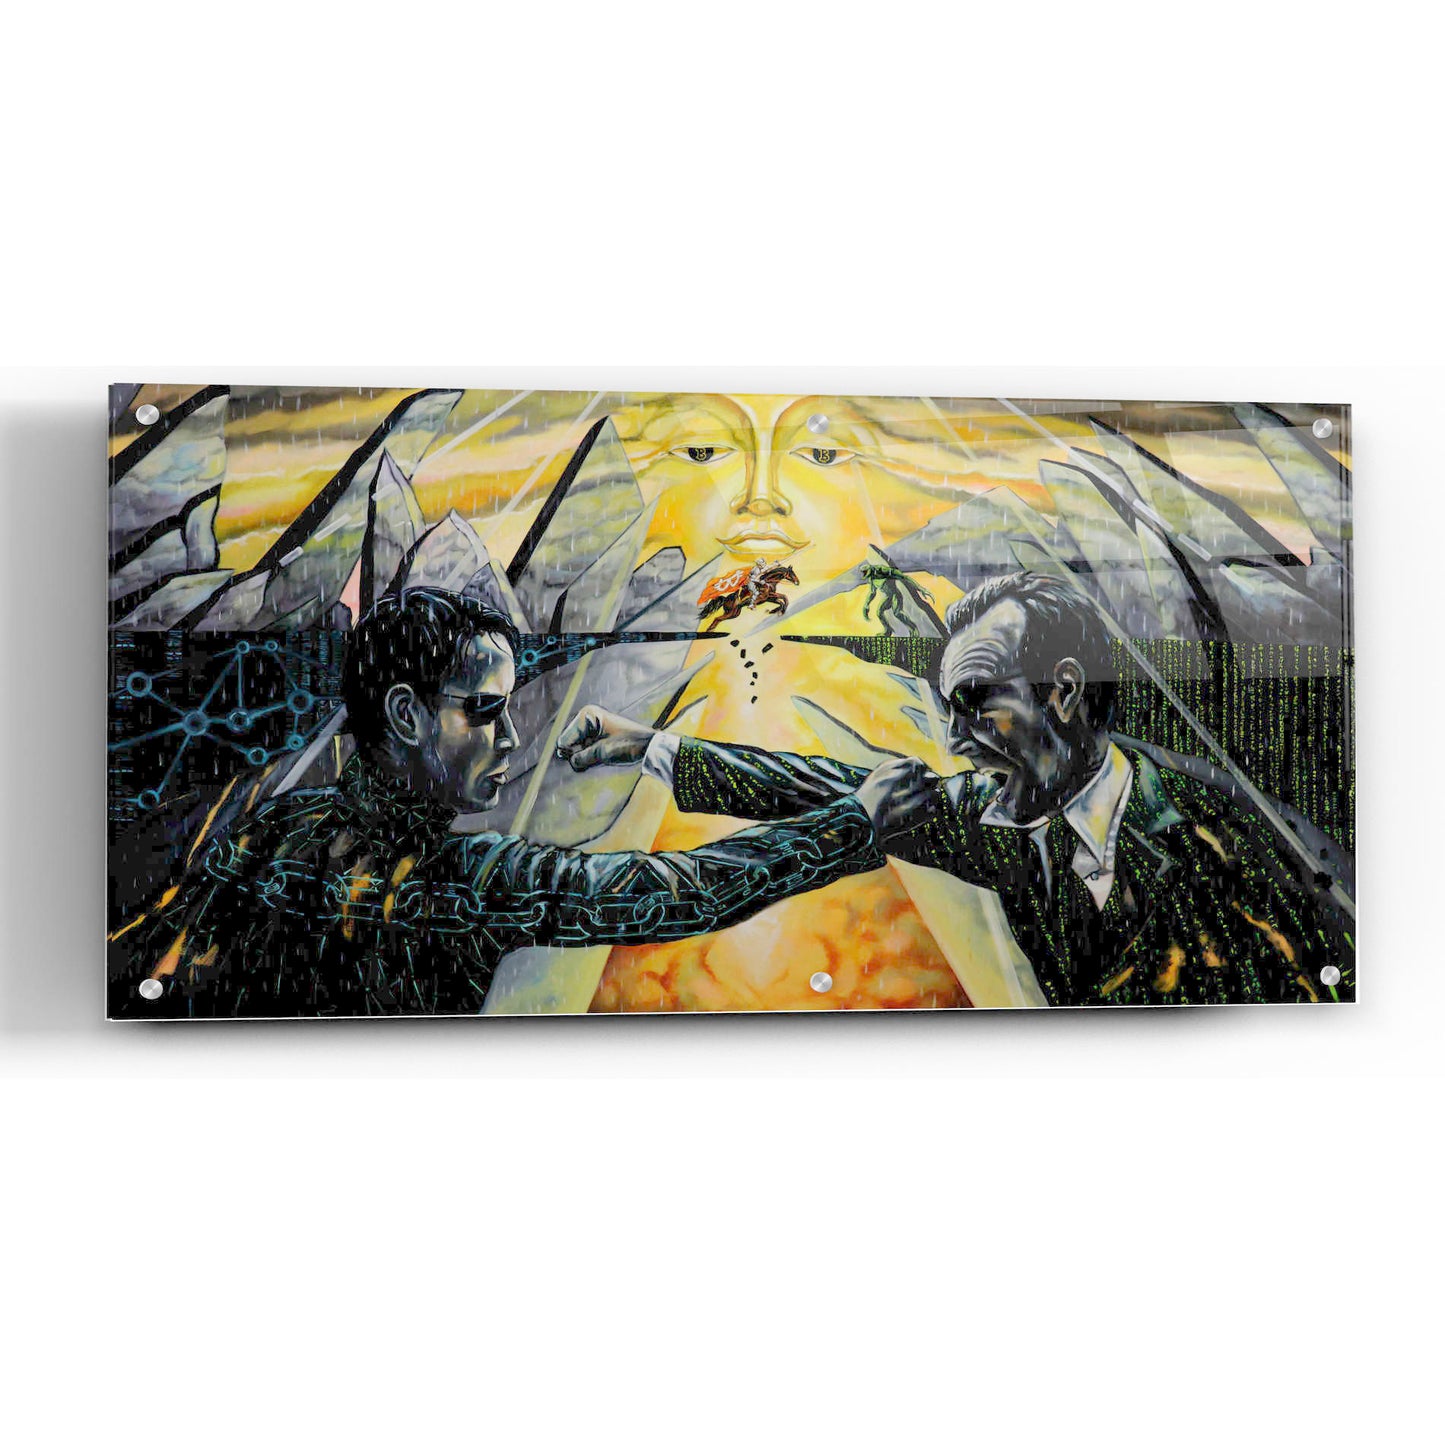 Epic Art 'Battle' by Jan Kasparec, Acrylic Glass Wall Art,48x24